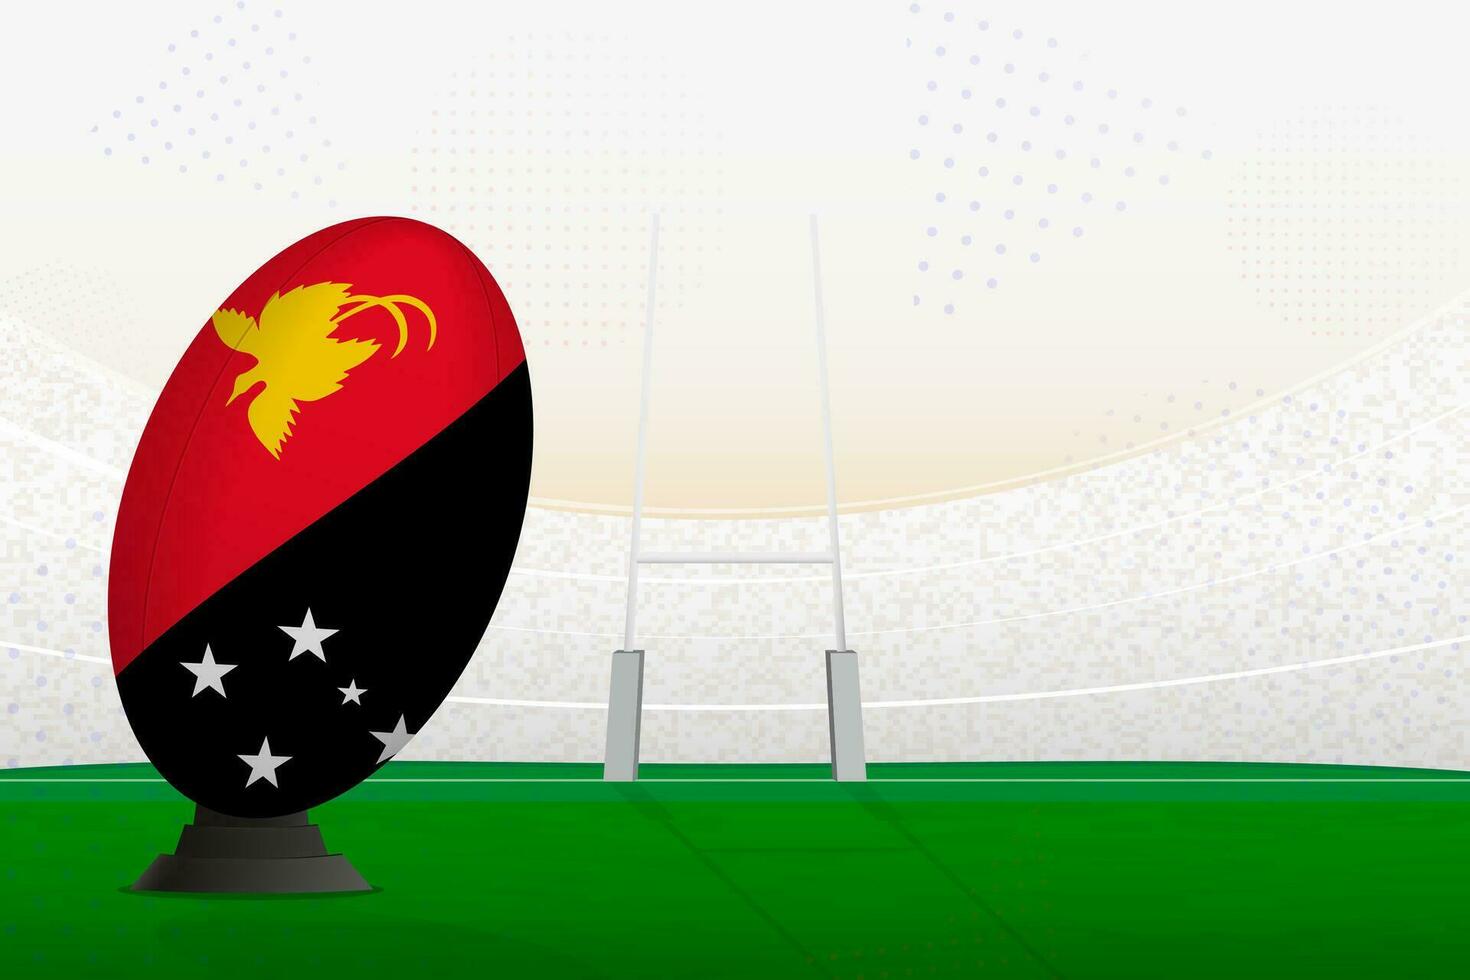 Papoea nieuw Guinea nationaal team rugby bal Aan rugby stadion en doel berichten, voorbereidingen treffen voor een straf of vrij trap. vector